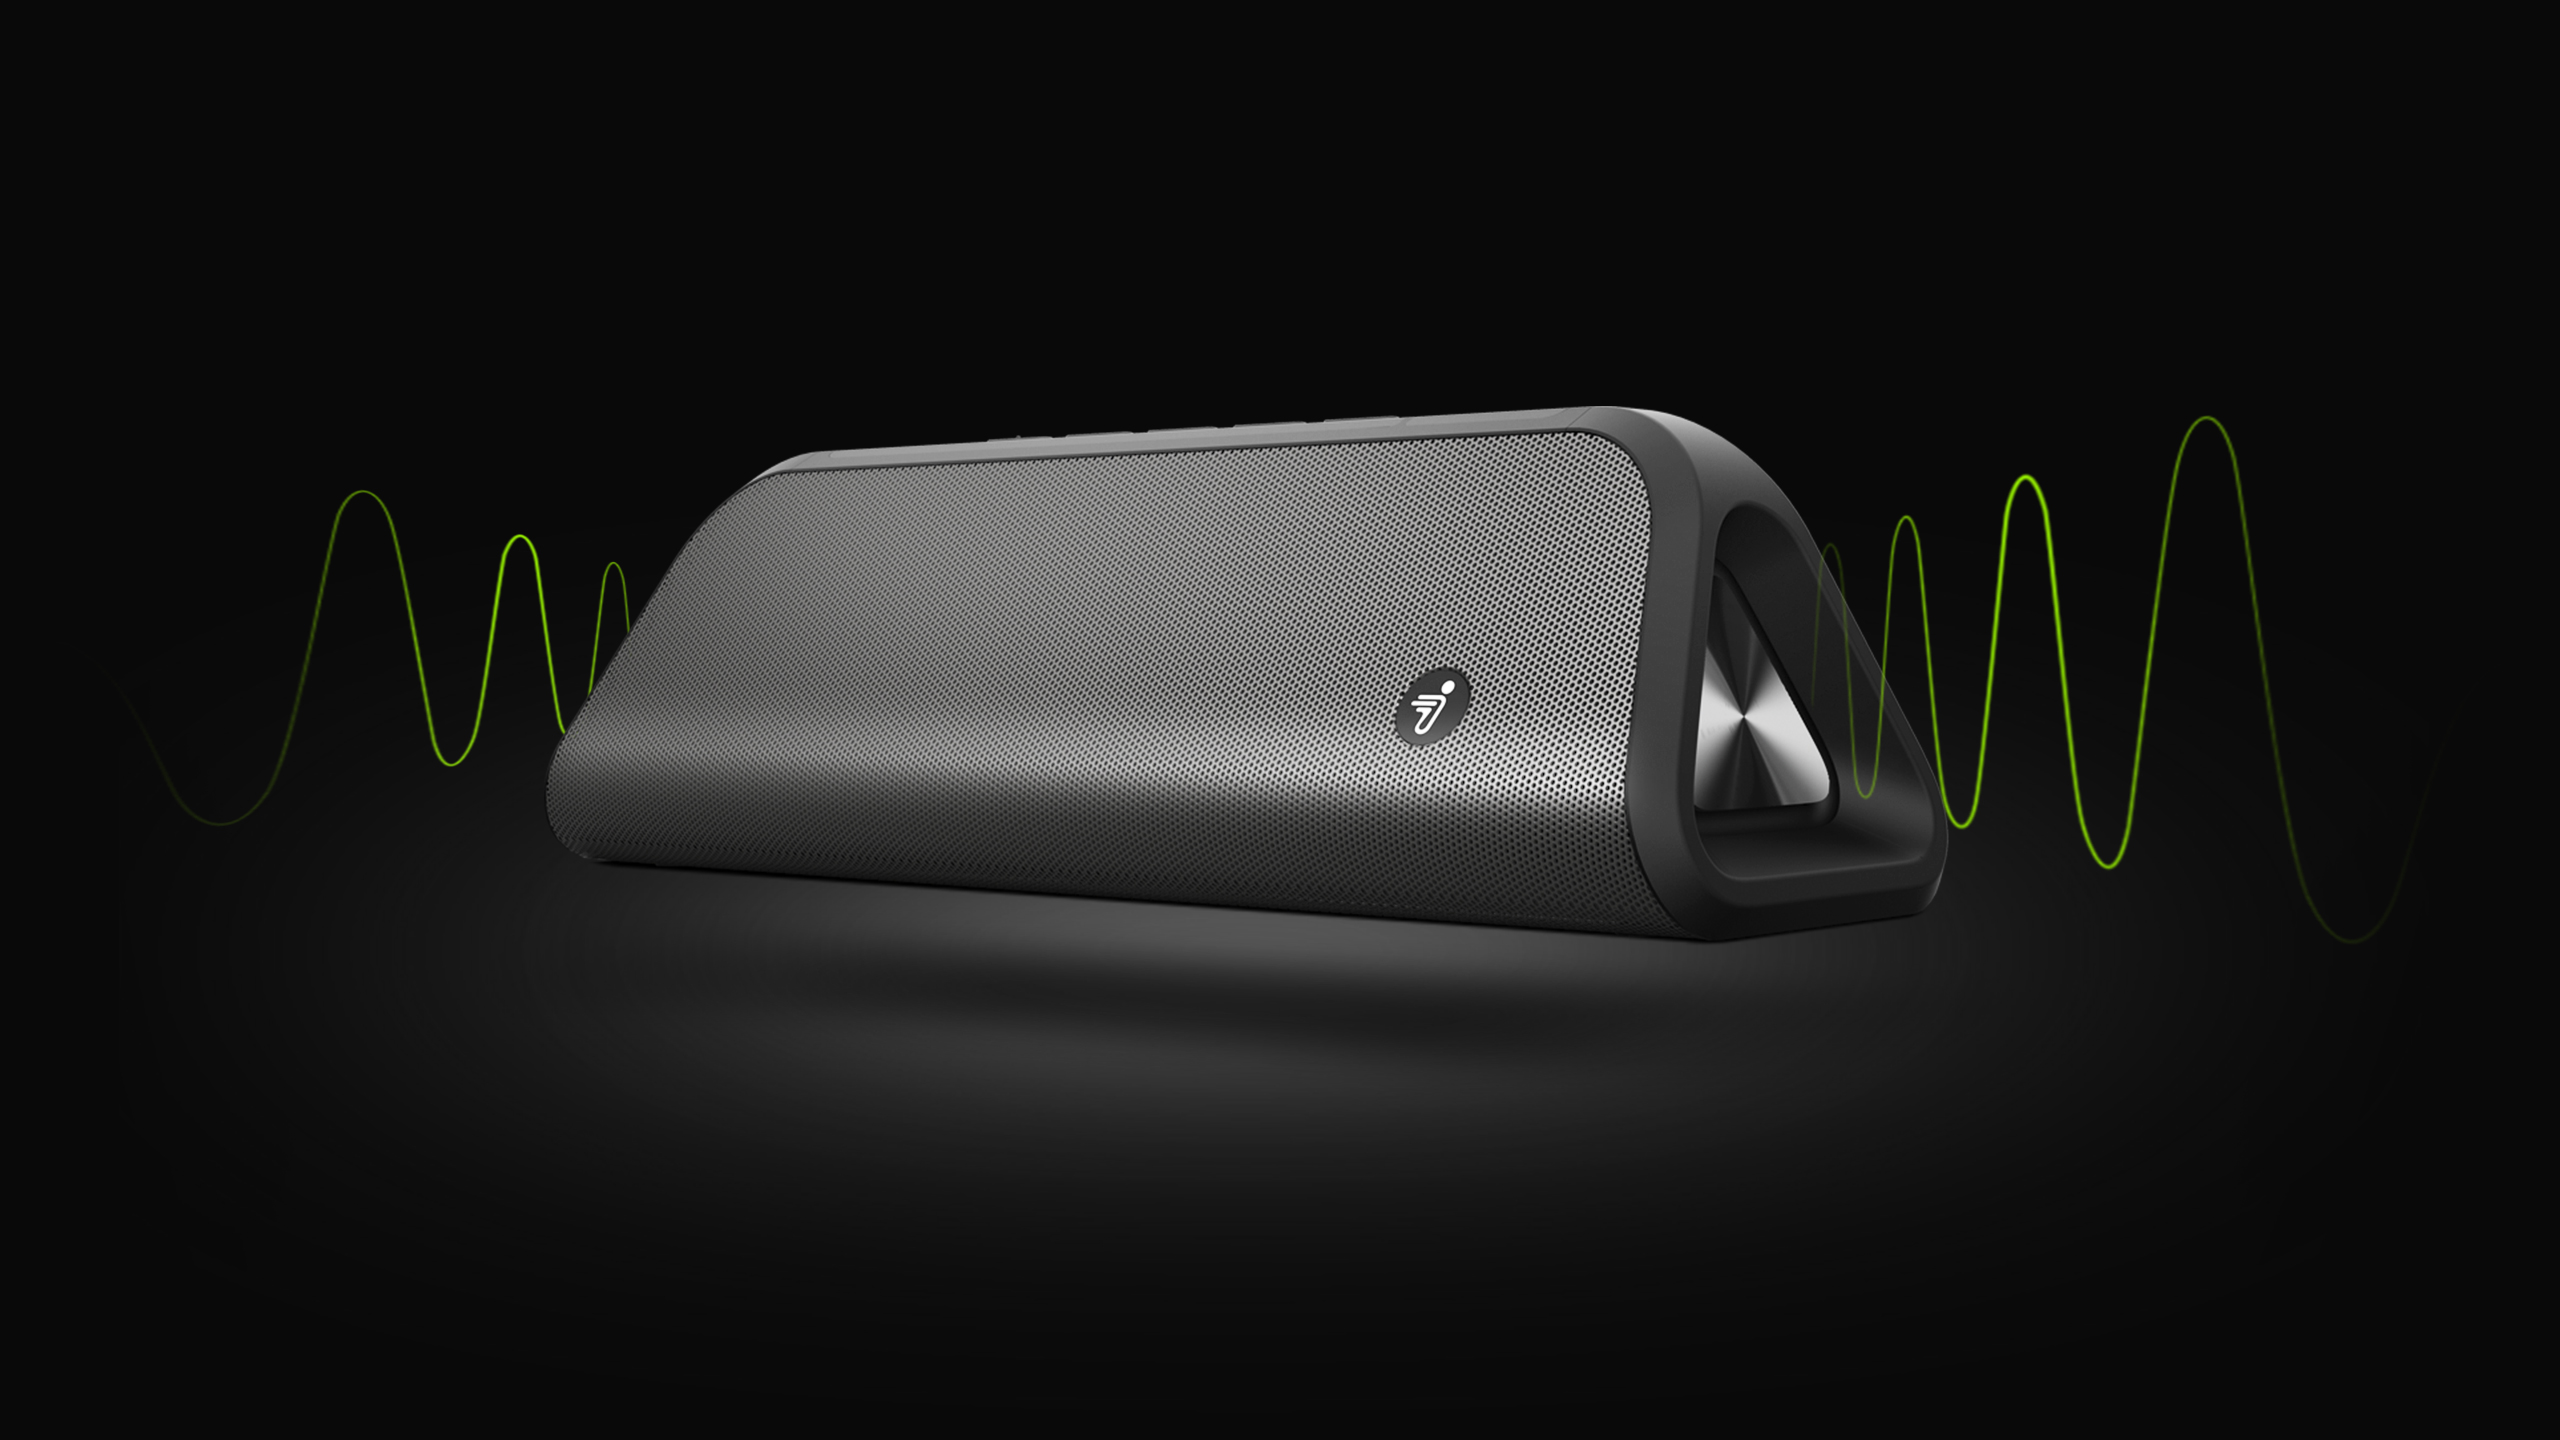 Ninebot GoKart Pro оборудован съёмной Bluetooth-колонкой для имитации звуков работы двигателей и прослушивания музыки